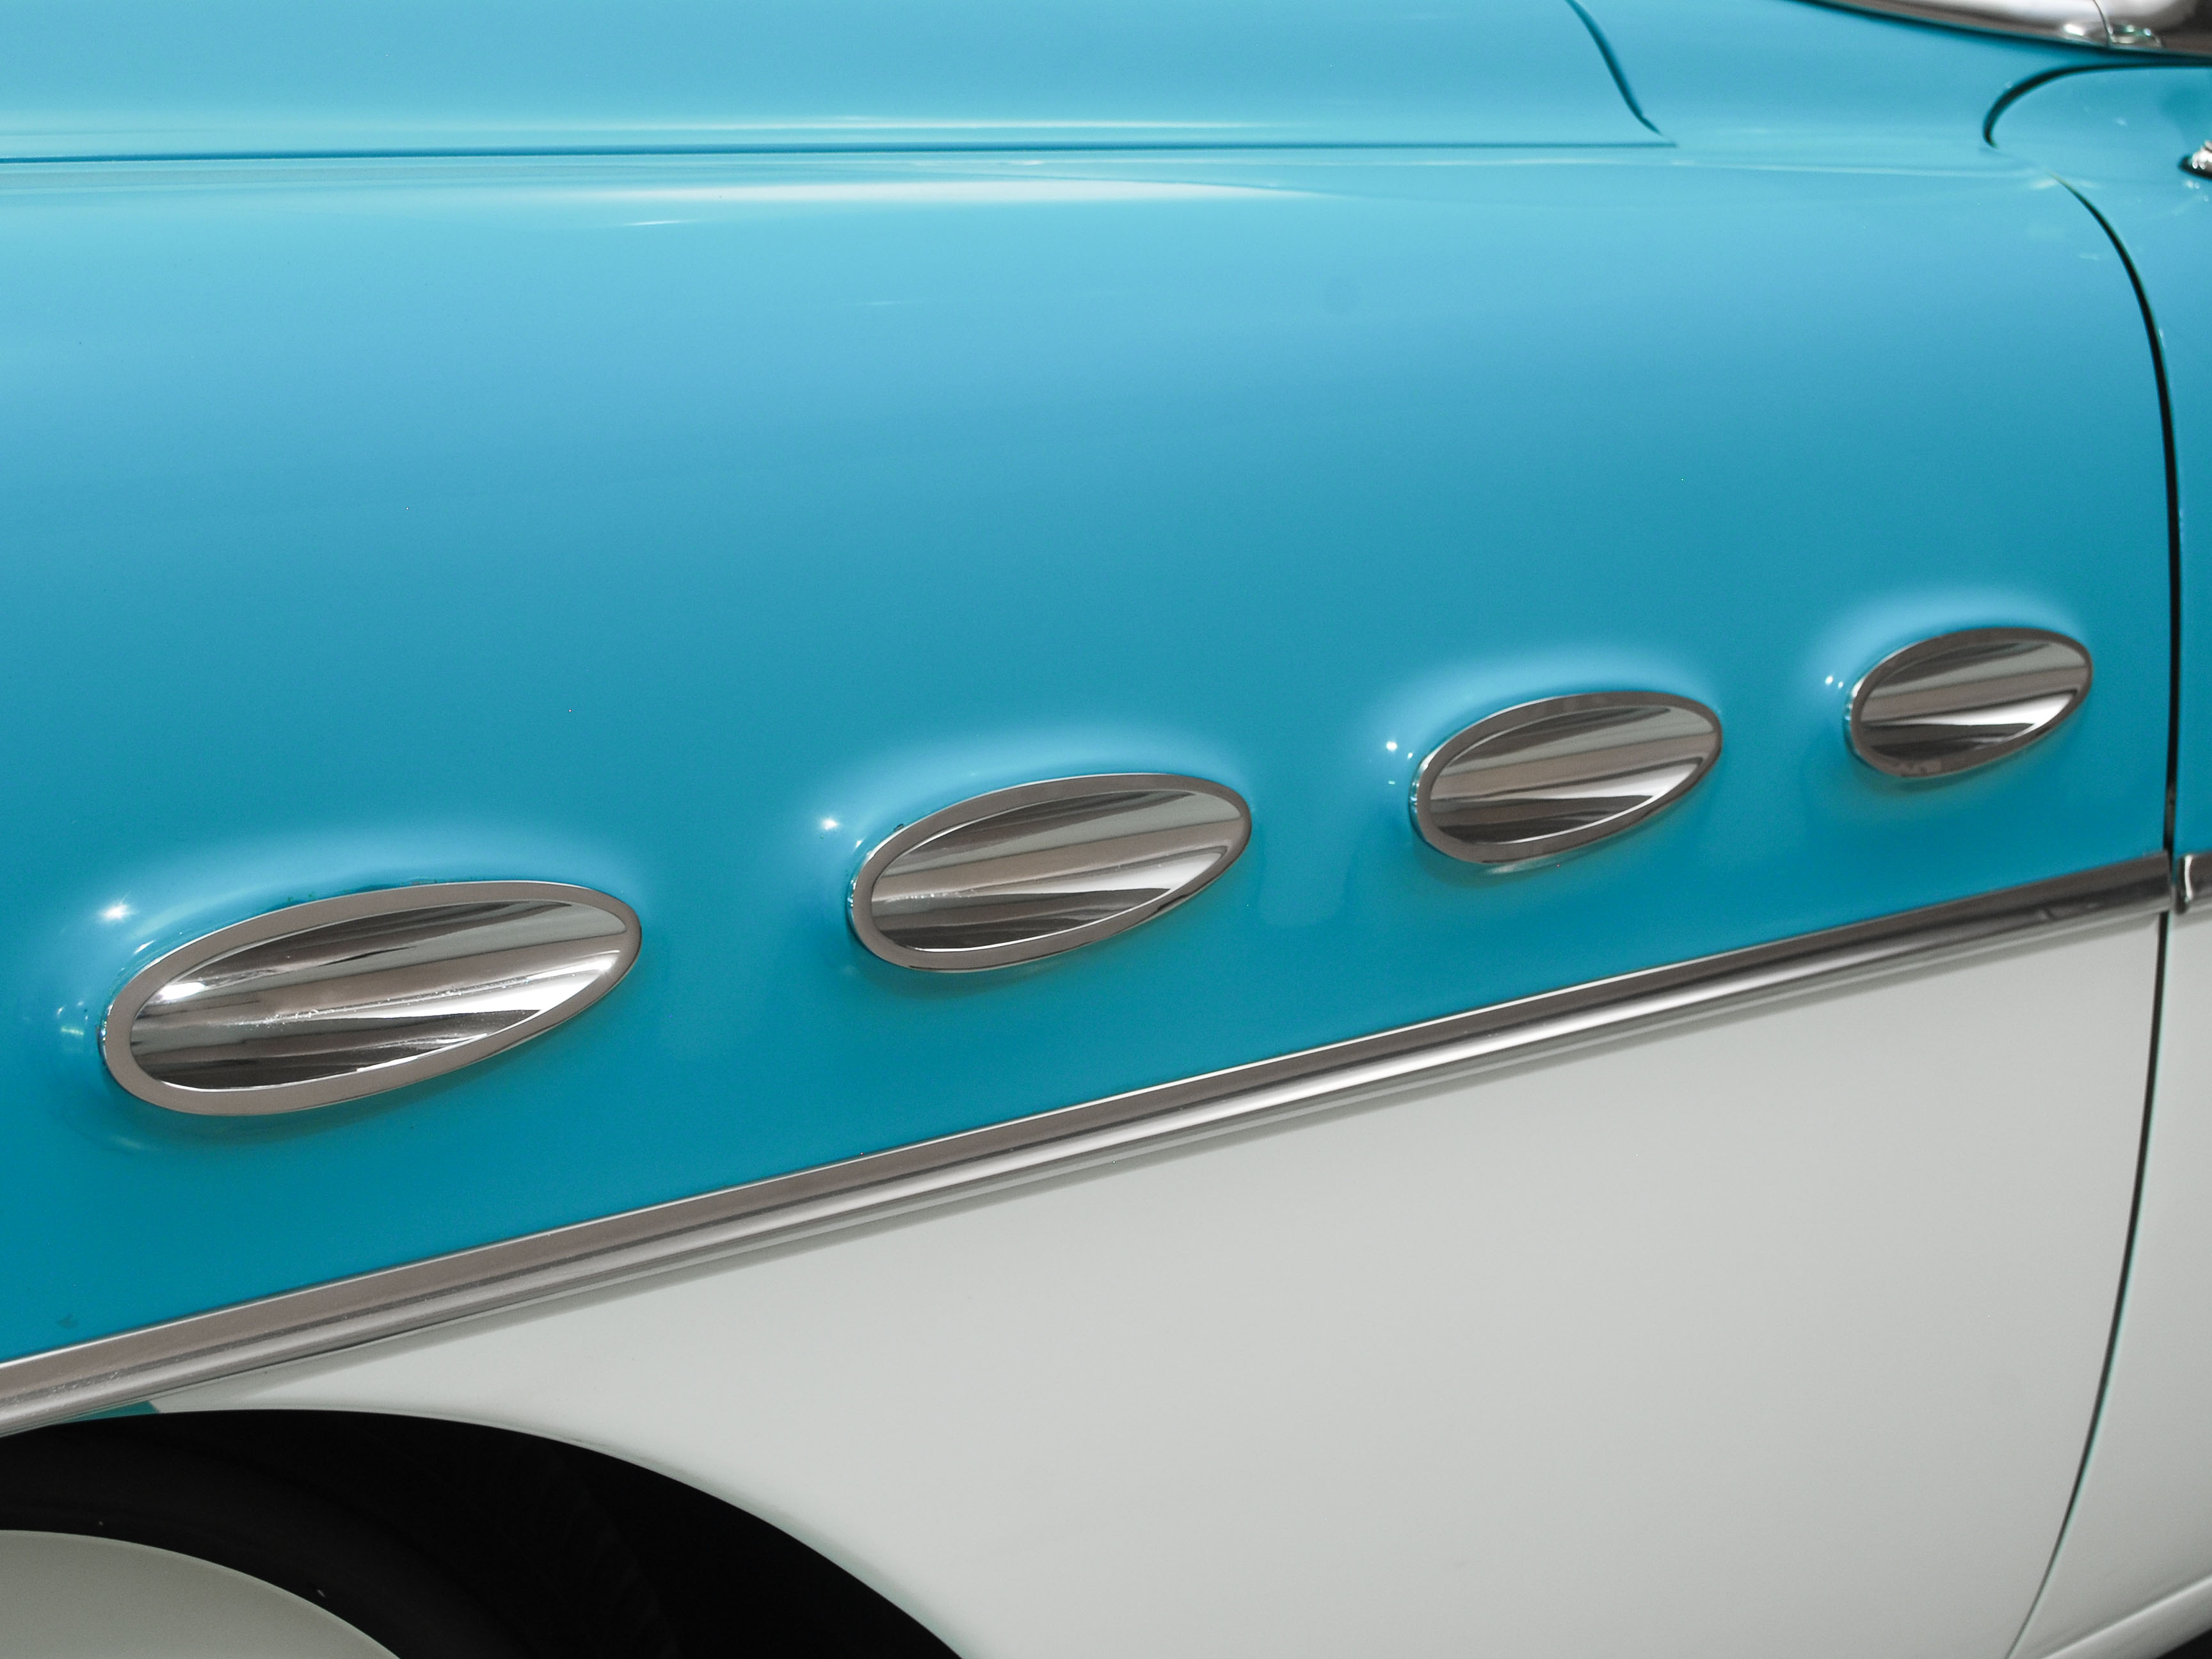 1957 buick super model 56c